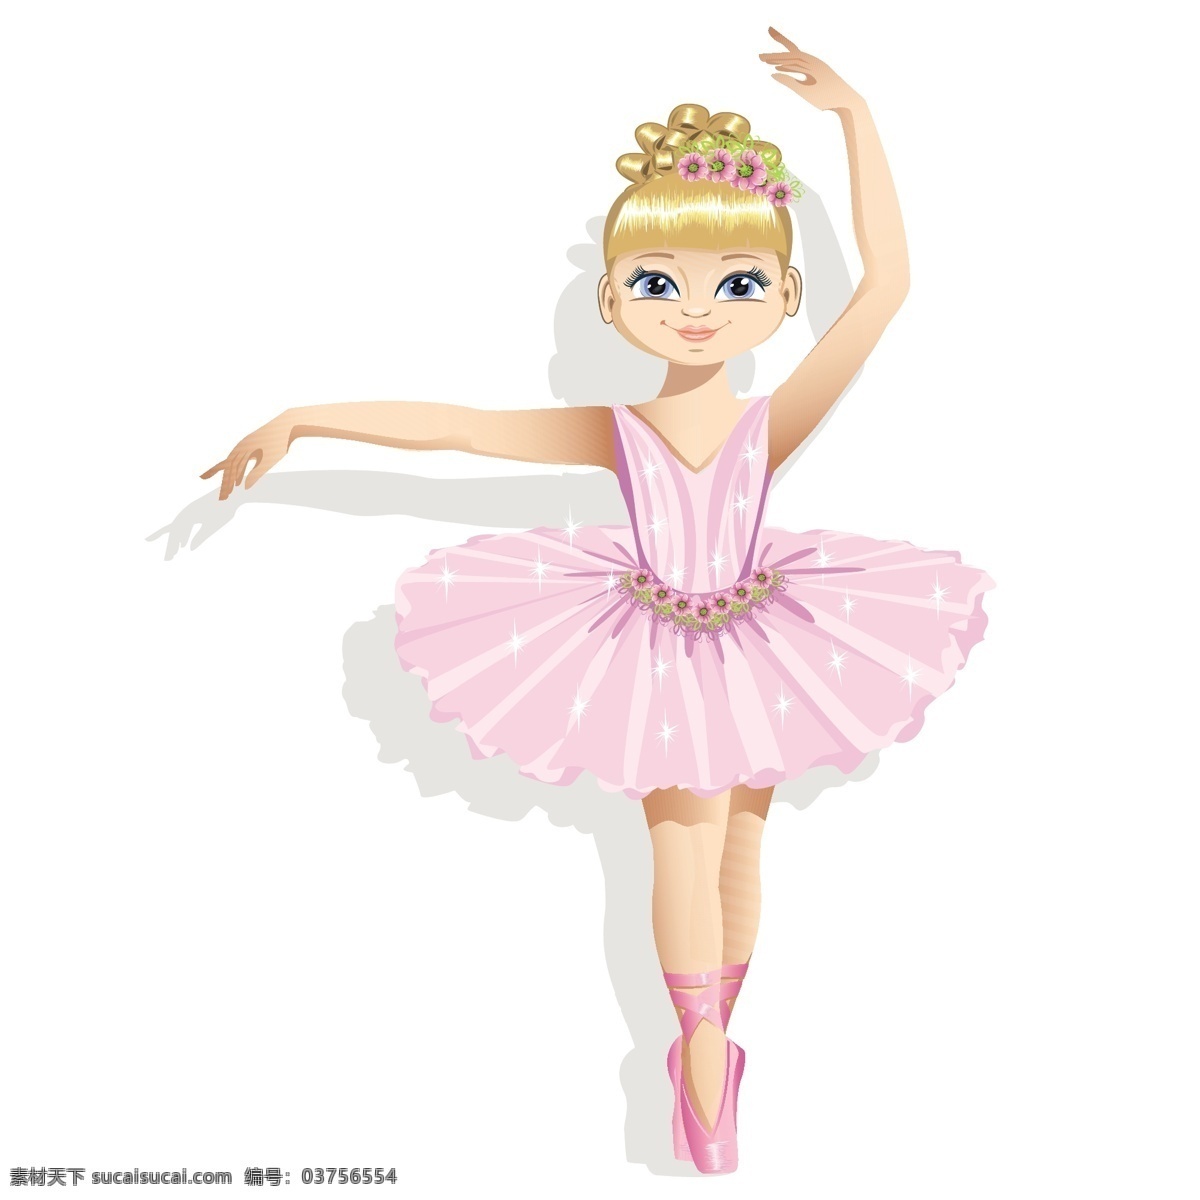 粉色 裙装 芭蕾舞 女孩 矢量图 卡通 人物 舞蹈 可爱 女生 乖巧 矢量